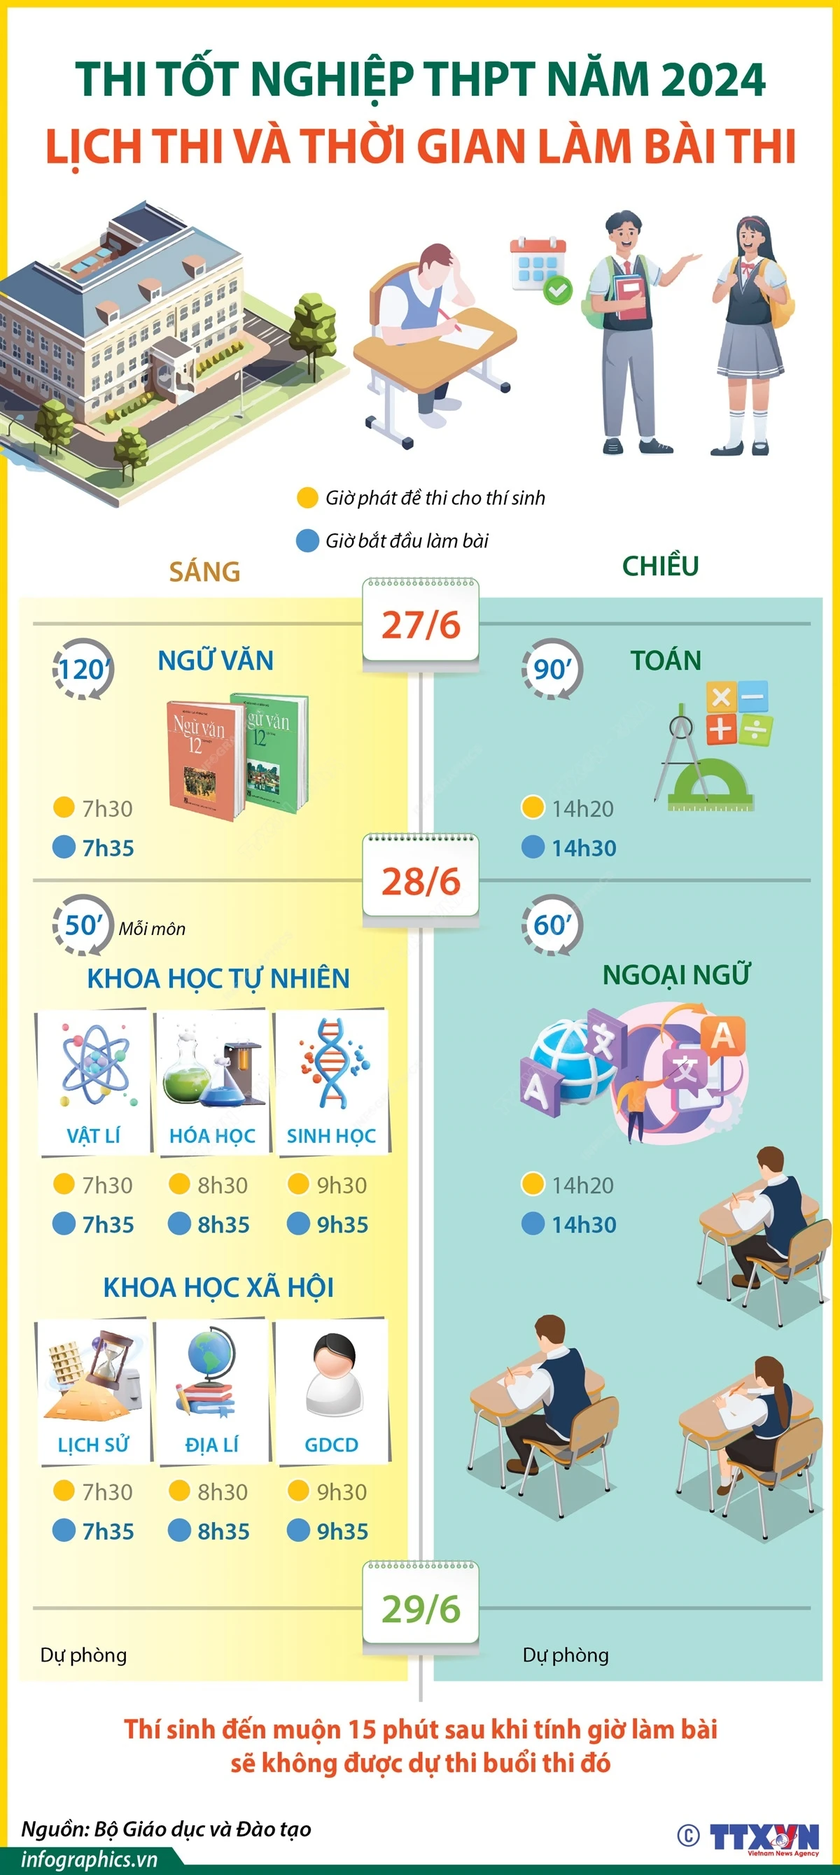 Thông tin lịch thi và thời gian làm bài kỳ thi tốt nghiệp THPT năm 2024 (nguồn TTXVN Vietnam)